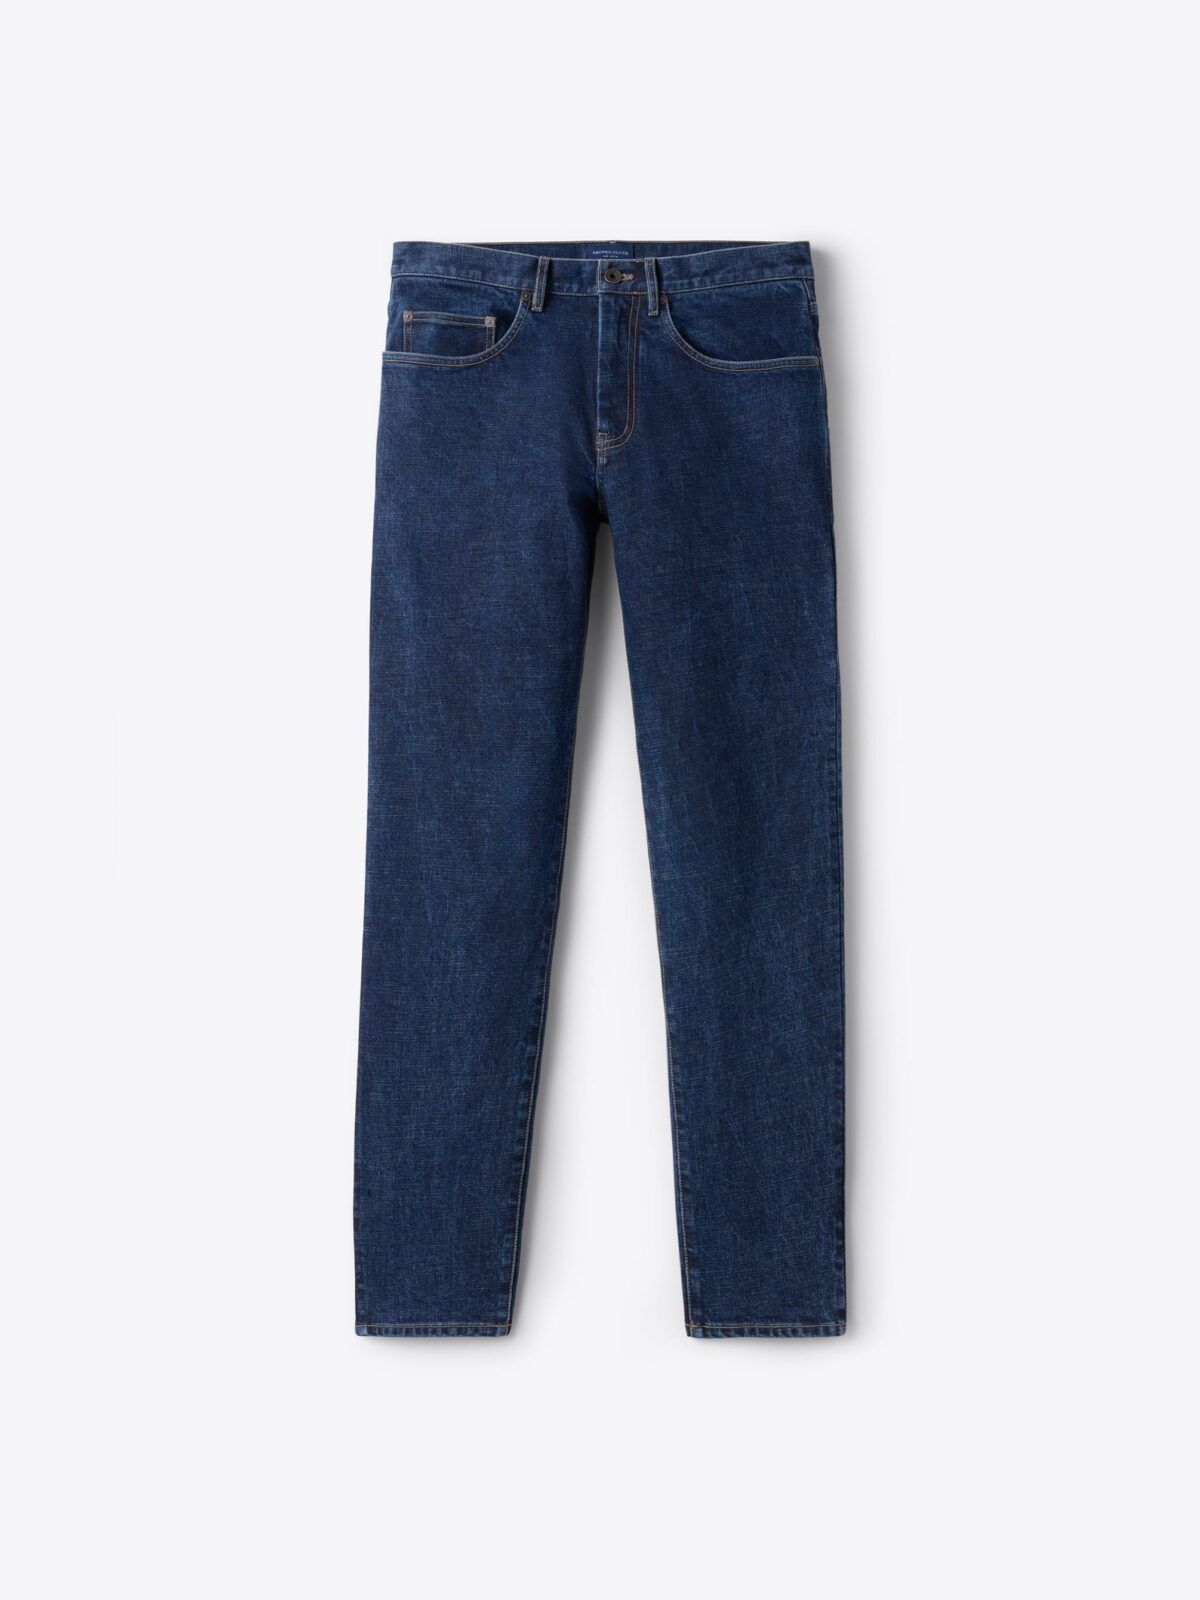 Y&F Kids by Westside Solid Light Blue Denim Jeans